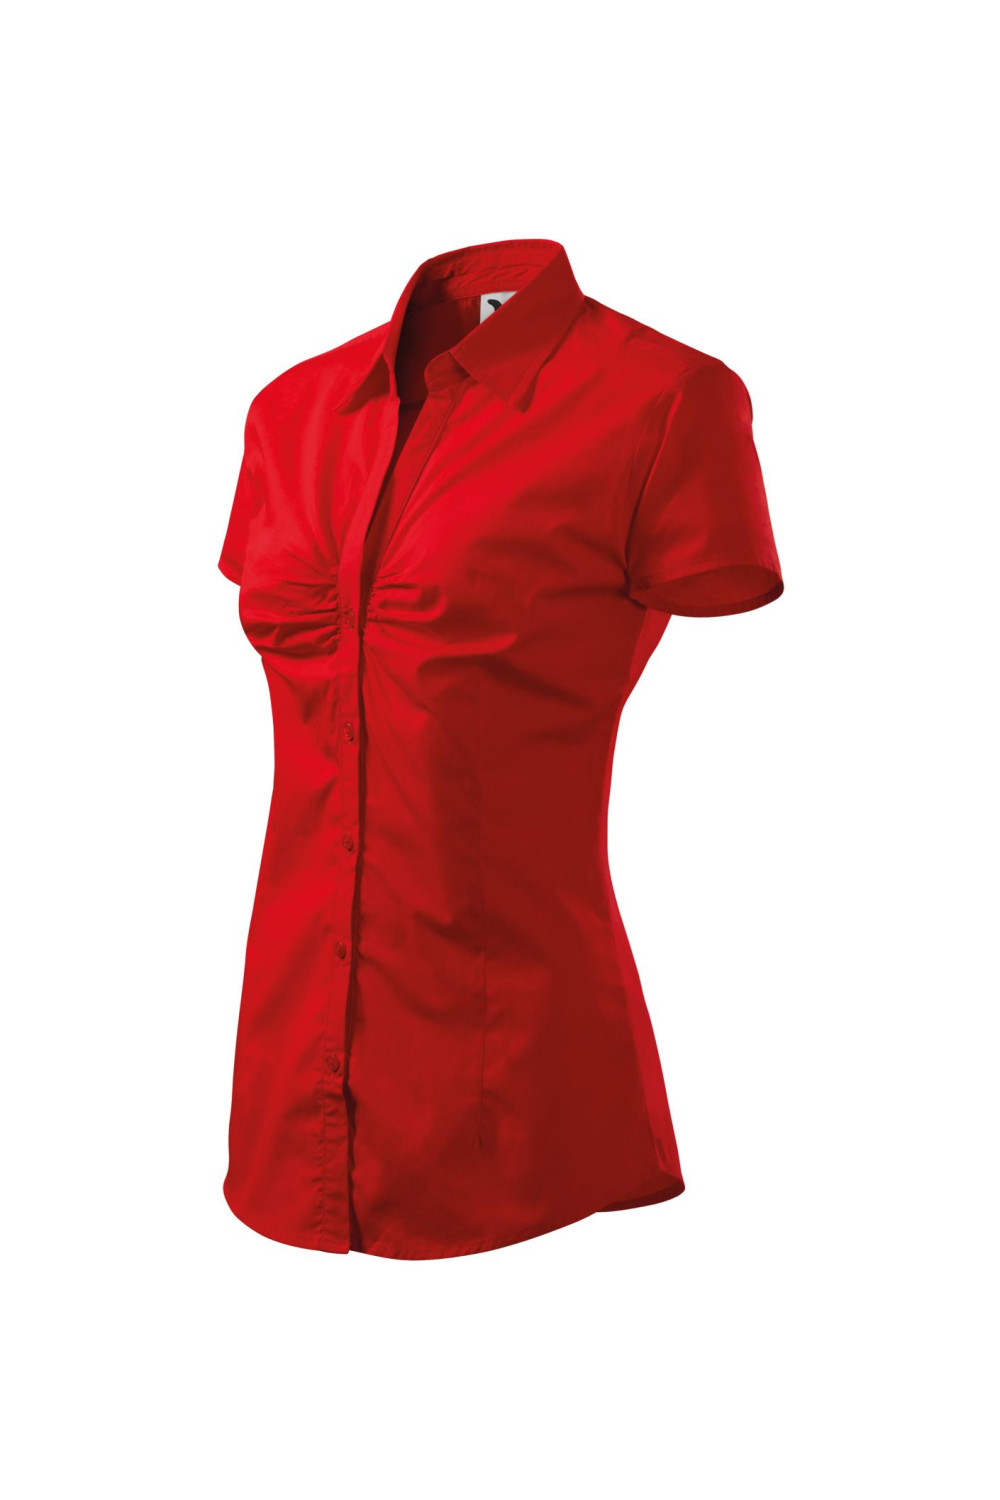 Koszula damska krótki rękaw 100% bawełna CHIC 214 koszule czerwony